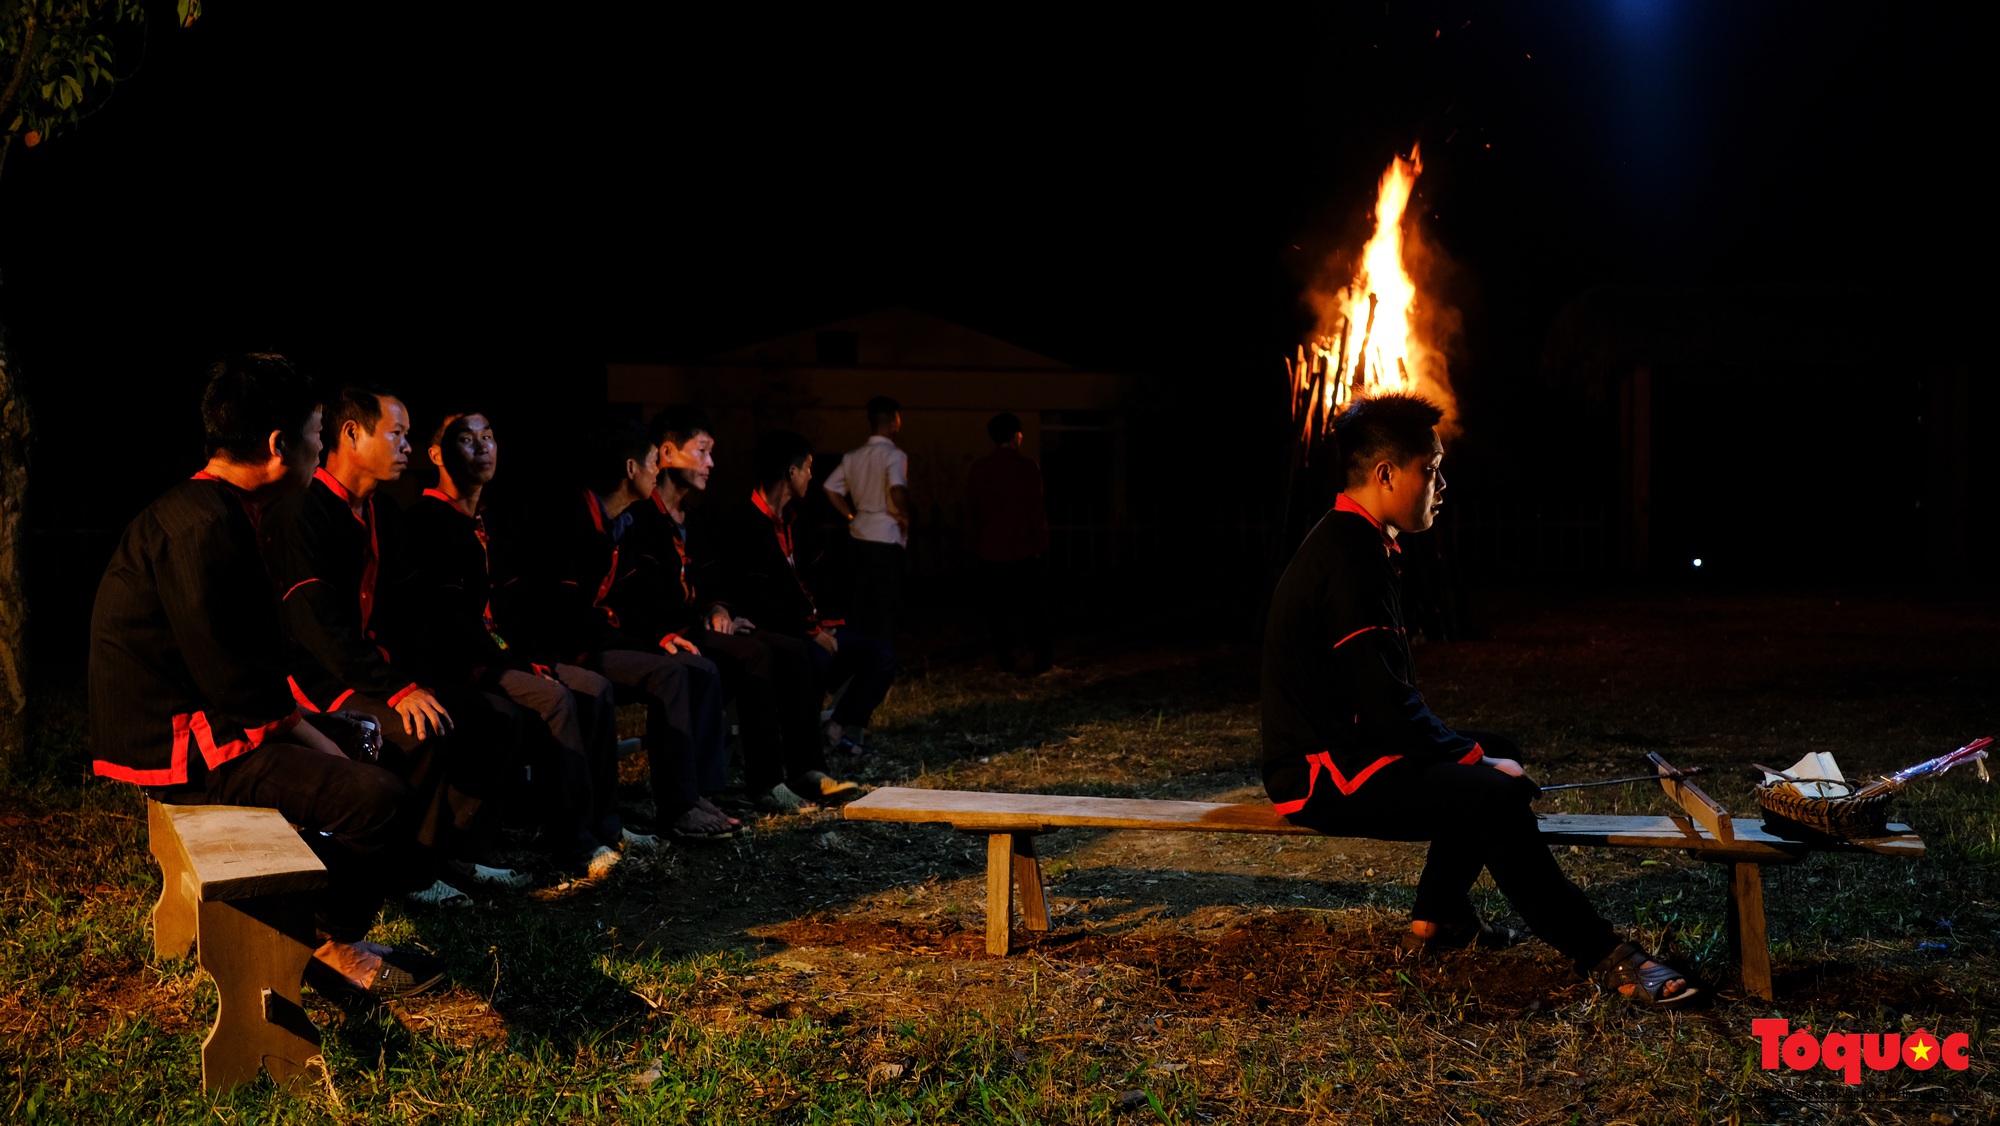 Bí ẩn nghi lễ nhảy lửa của người Pà Thẻn nơi địa đầu Tổ quốc - Ảnh 6.